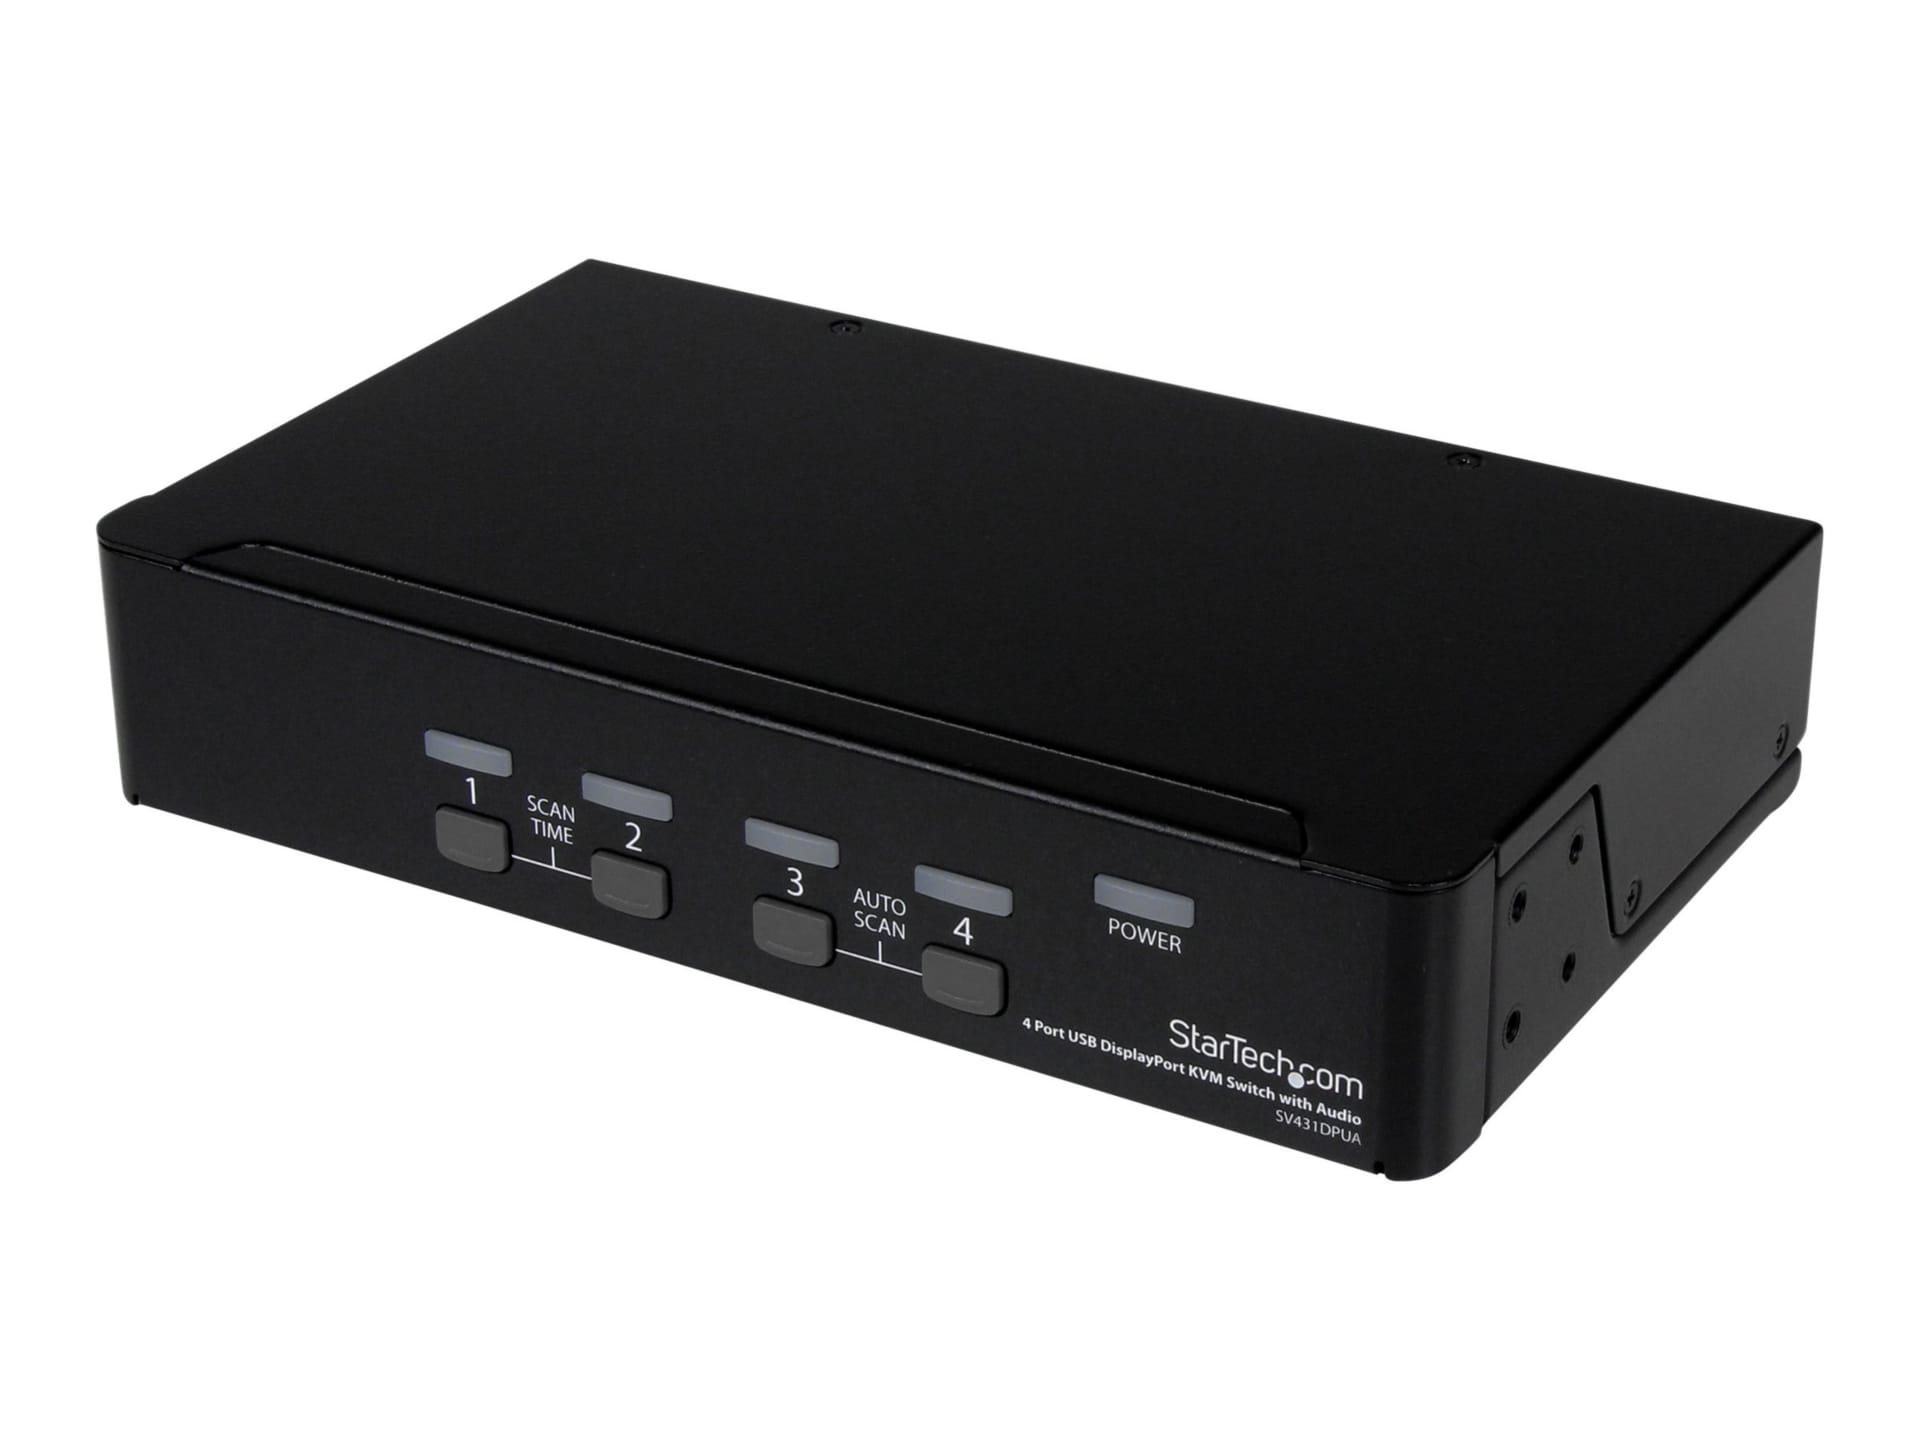 StarTech.com 4 Port USB DisplayPort KVM Switch with Audio - w/ USB 2.0 Hub